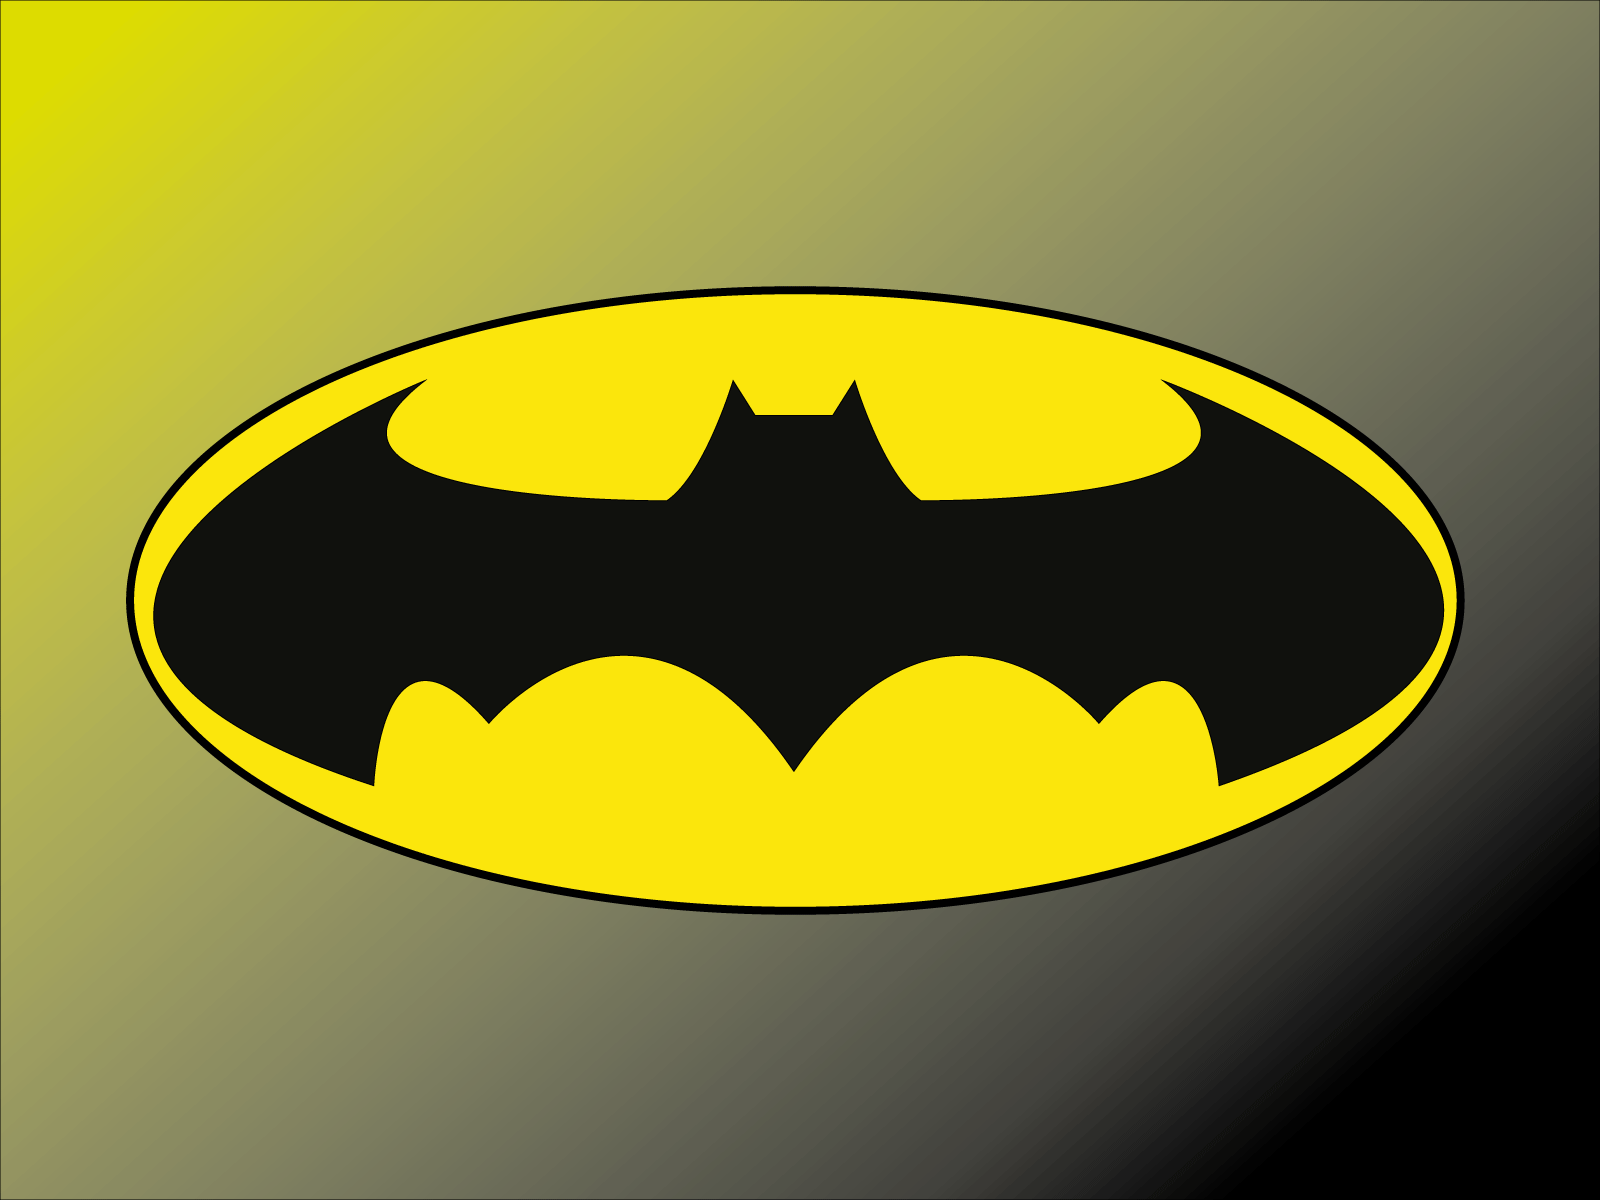 Batman by Daniyal Ghani on Dribbble